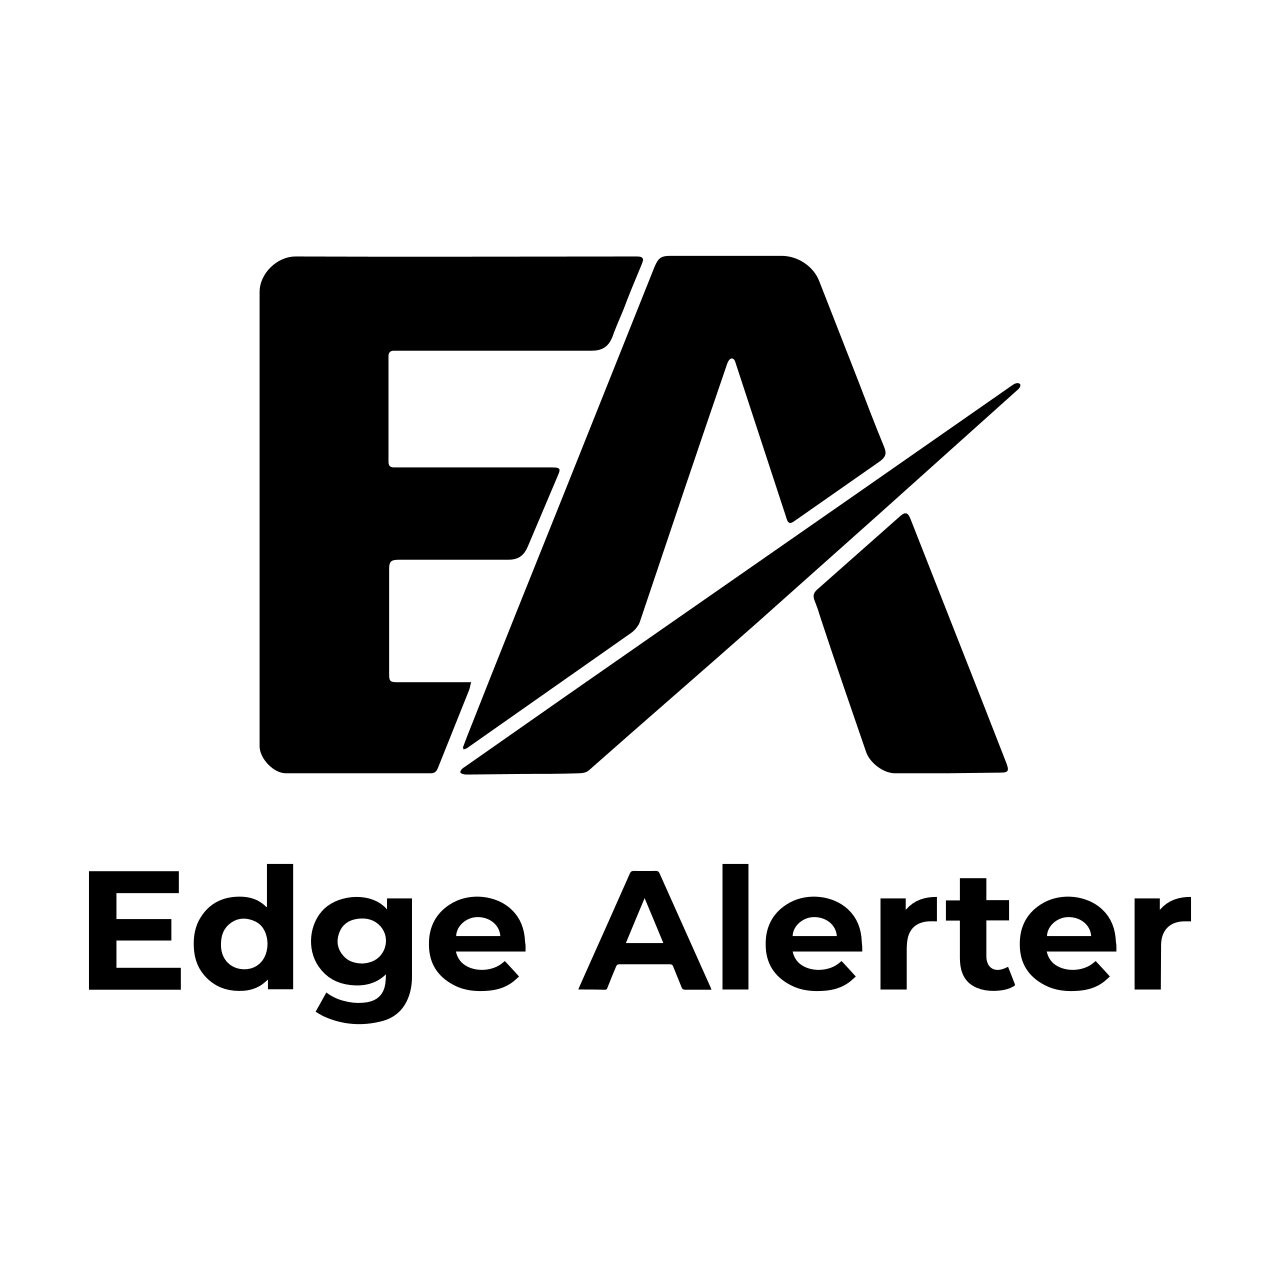 Edge Alerter - Best Tipping System in Australia